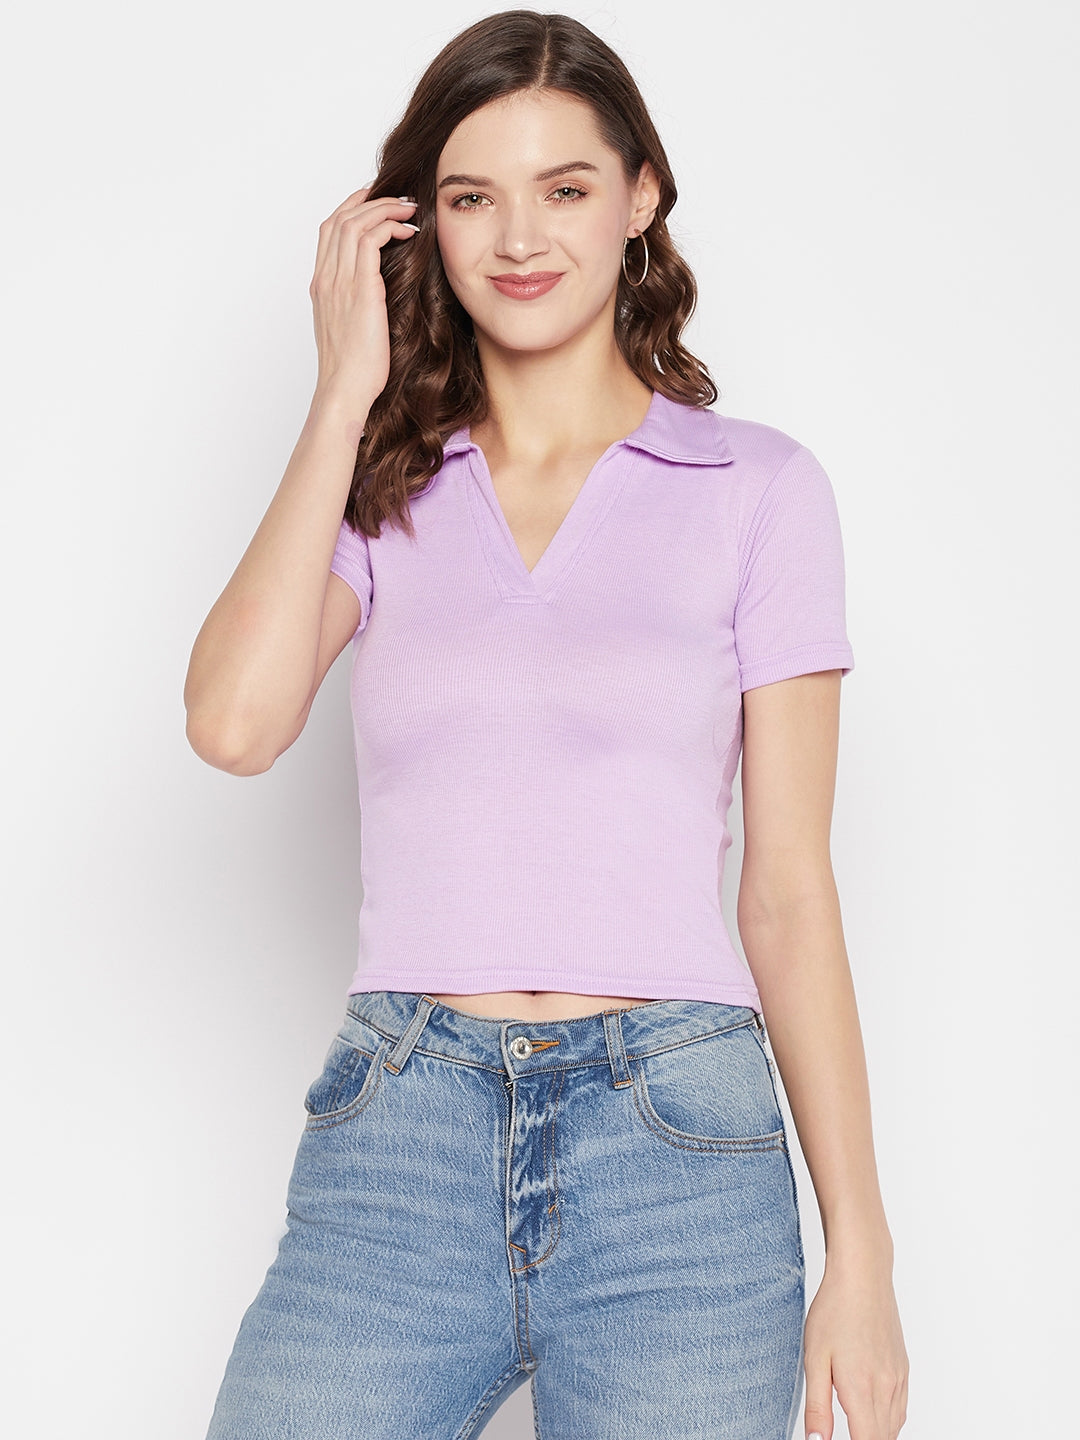 Clora Mauve Solid Shirt Collar Crop Top